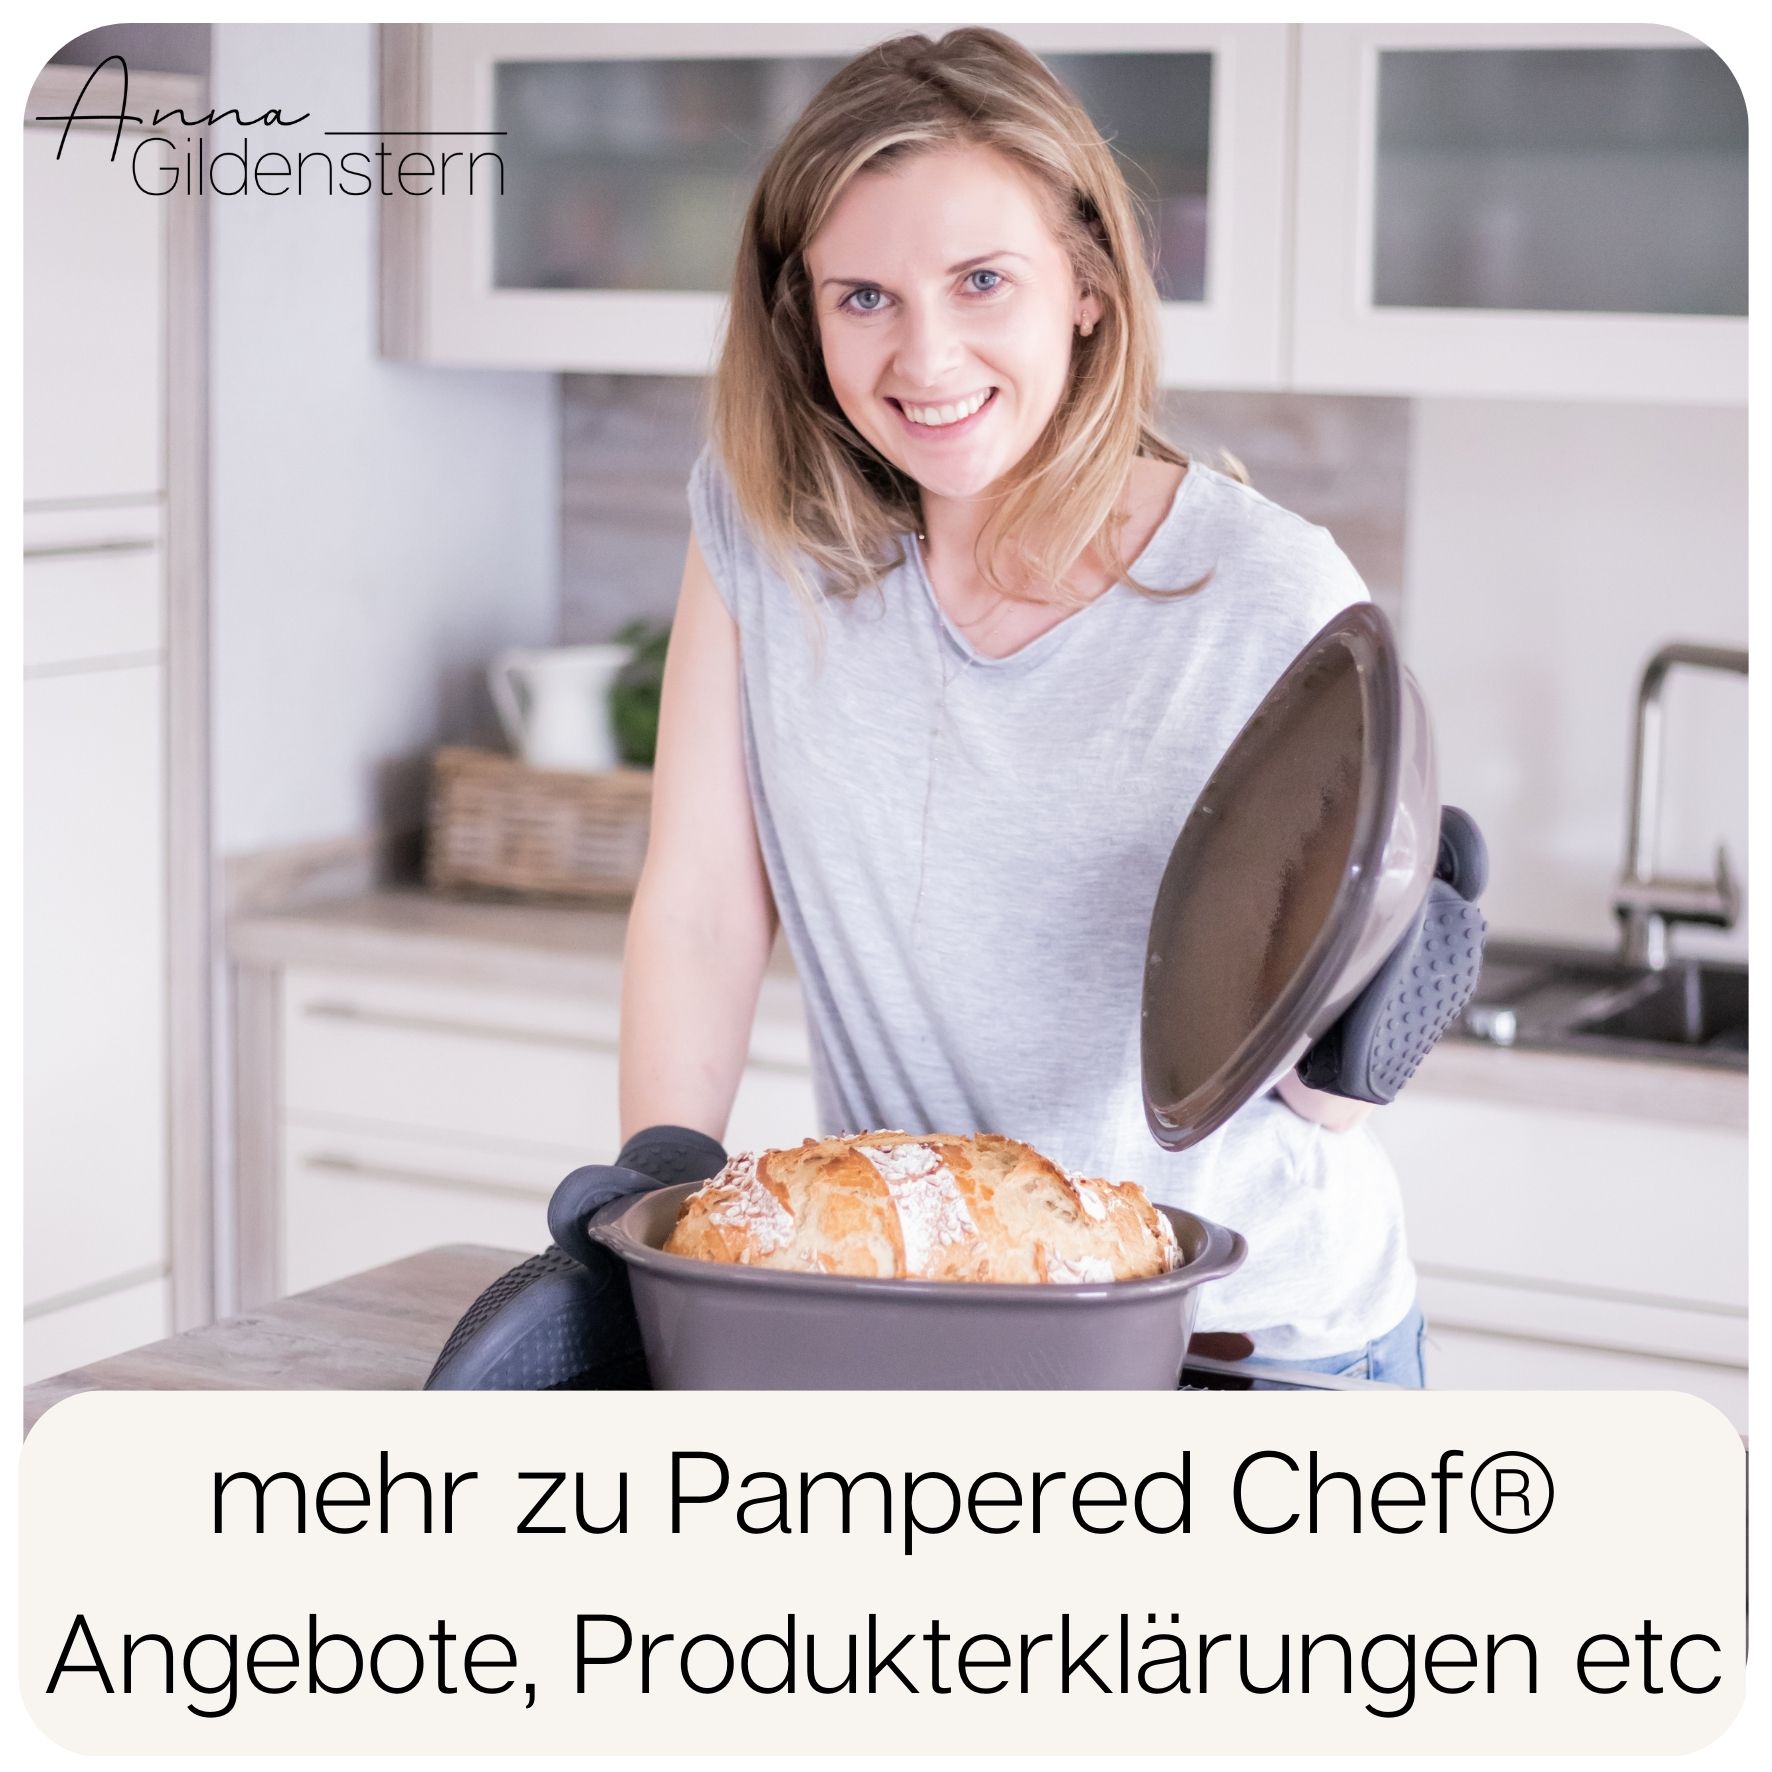 Pampered Chef Shop Anna Gildenstern